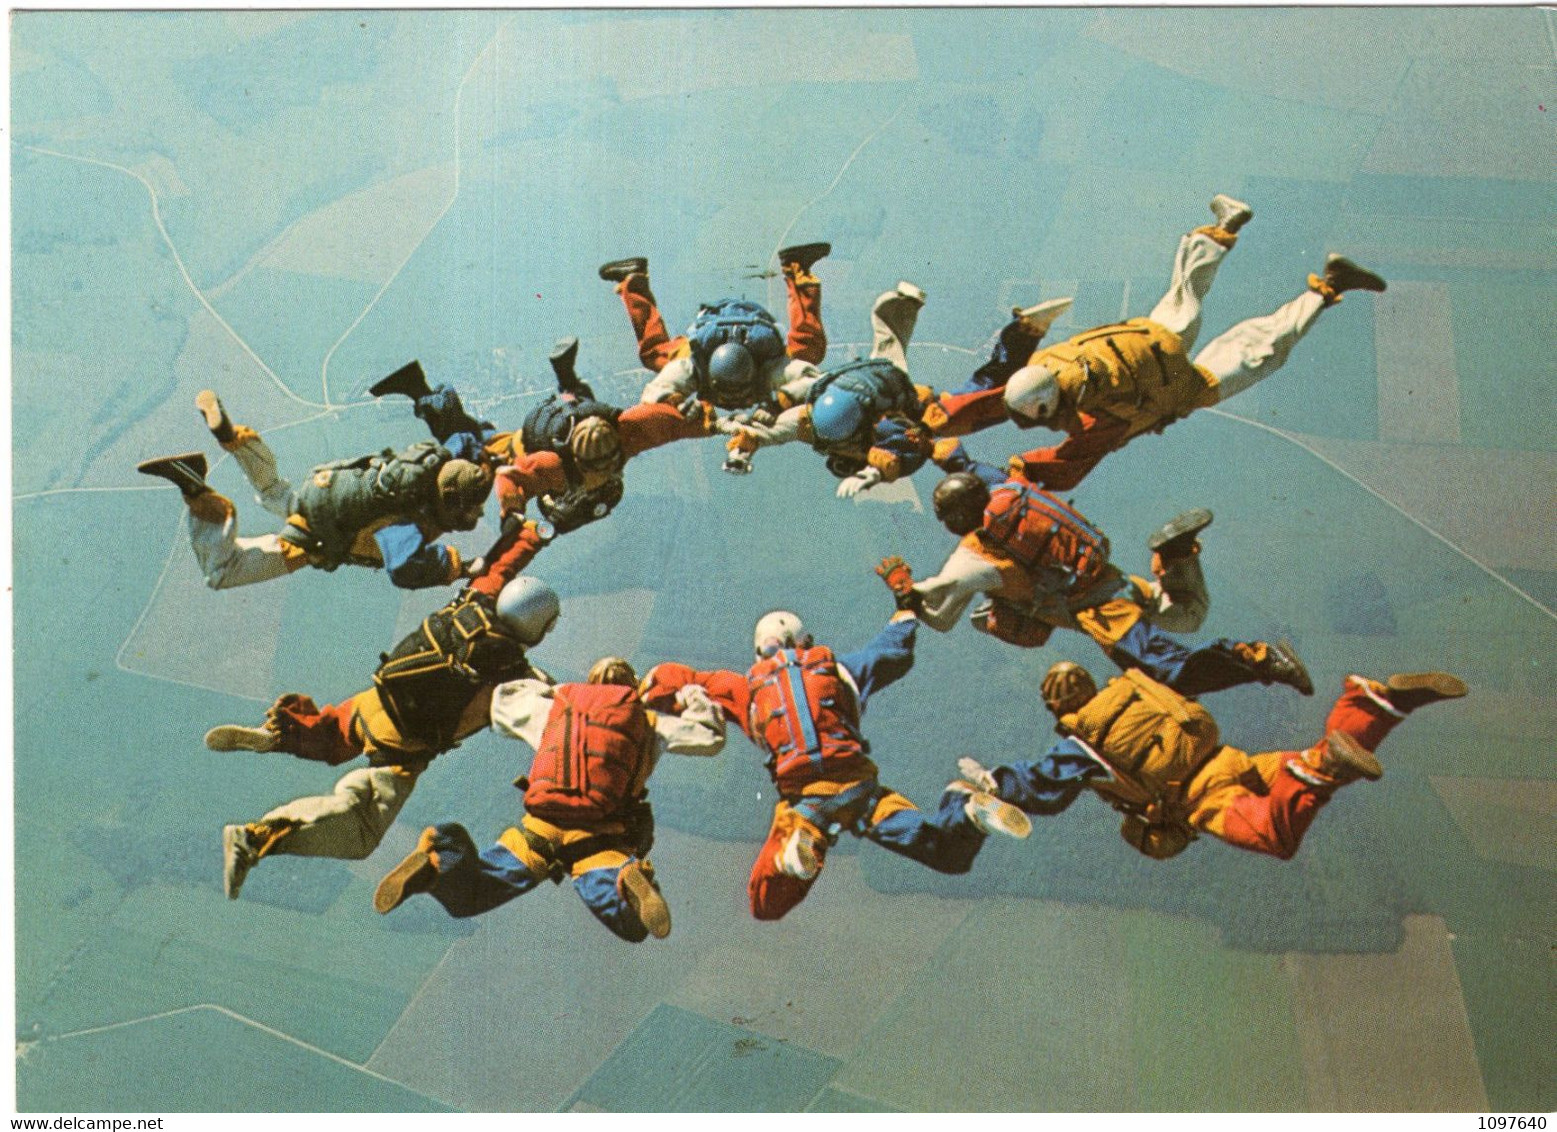 PARACHUTISME : ICARIUS GROUP FRANCE 1974 - Parachutisme